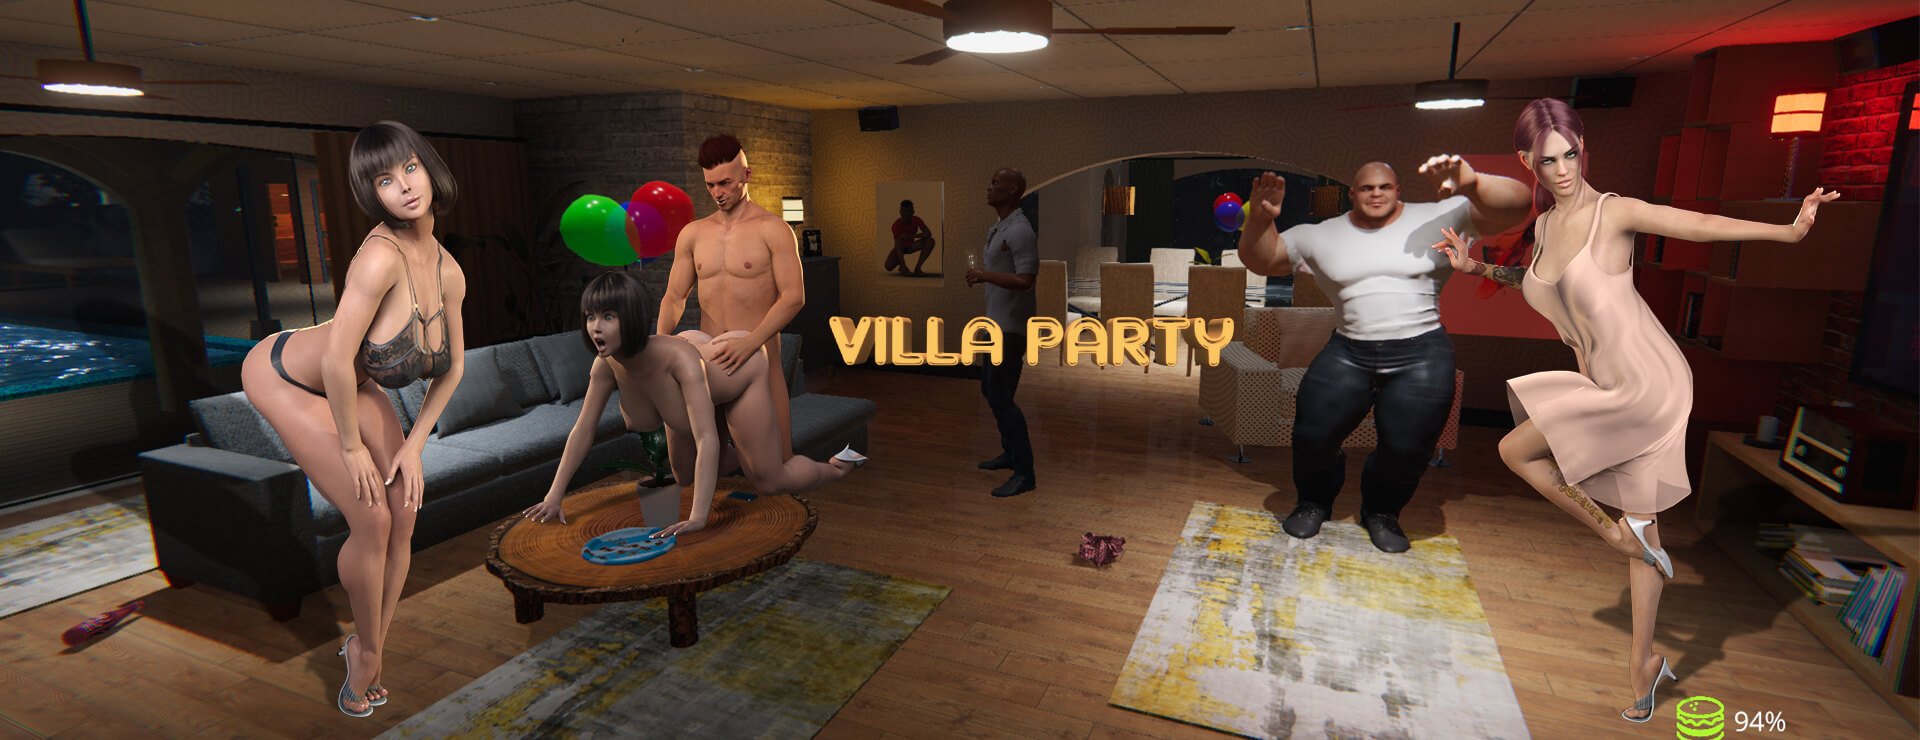 Villa Party I - Action Adventure Spiel